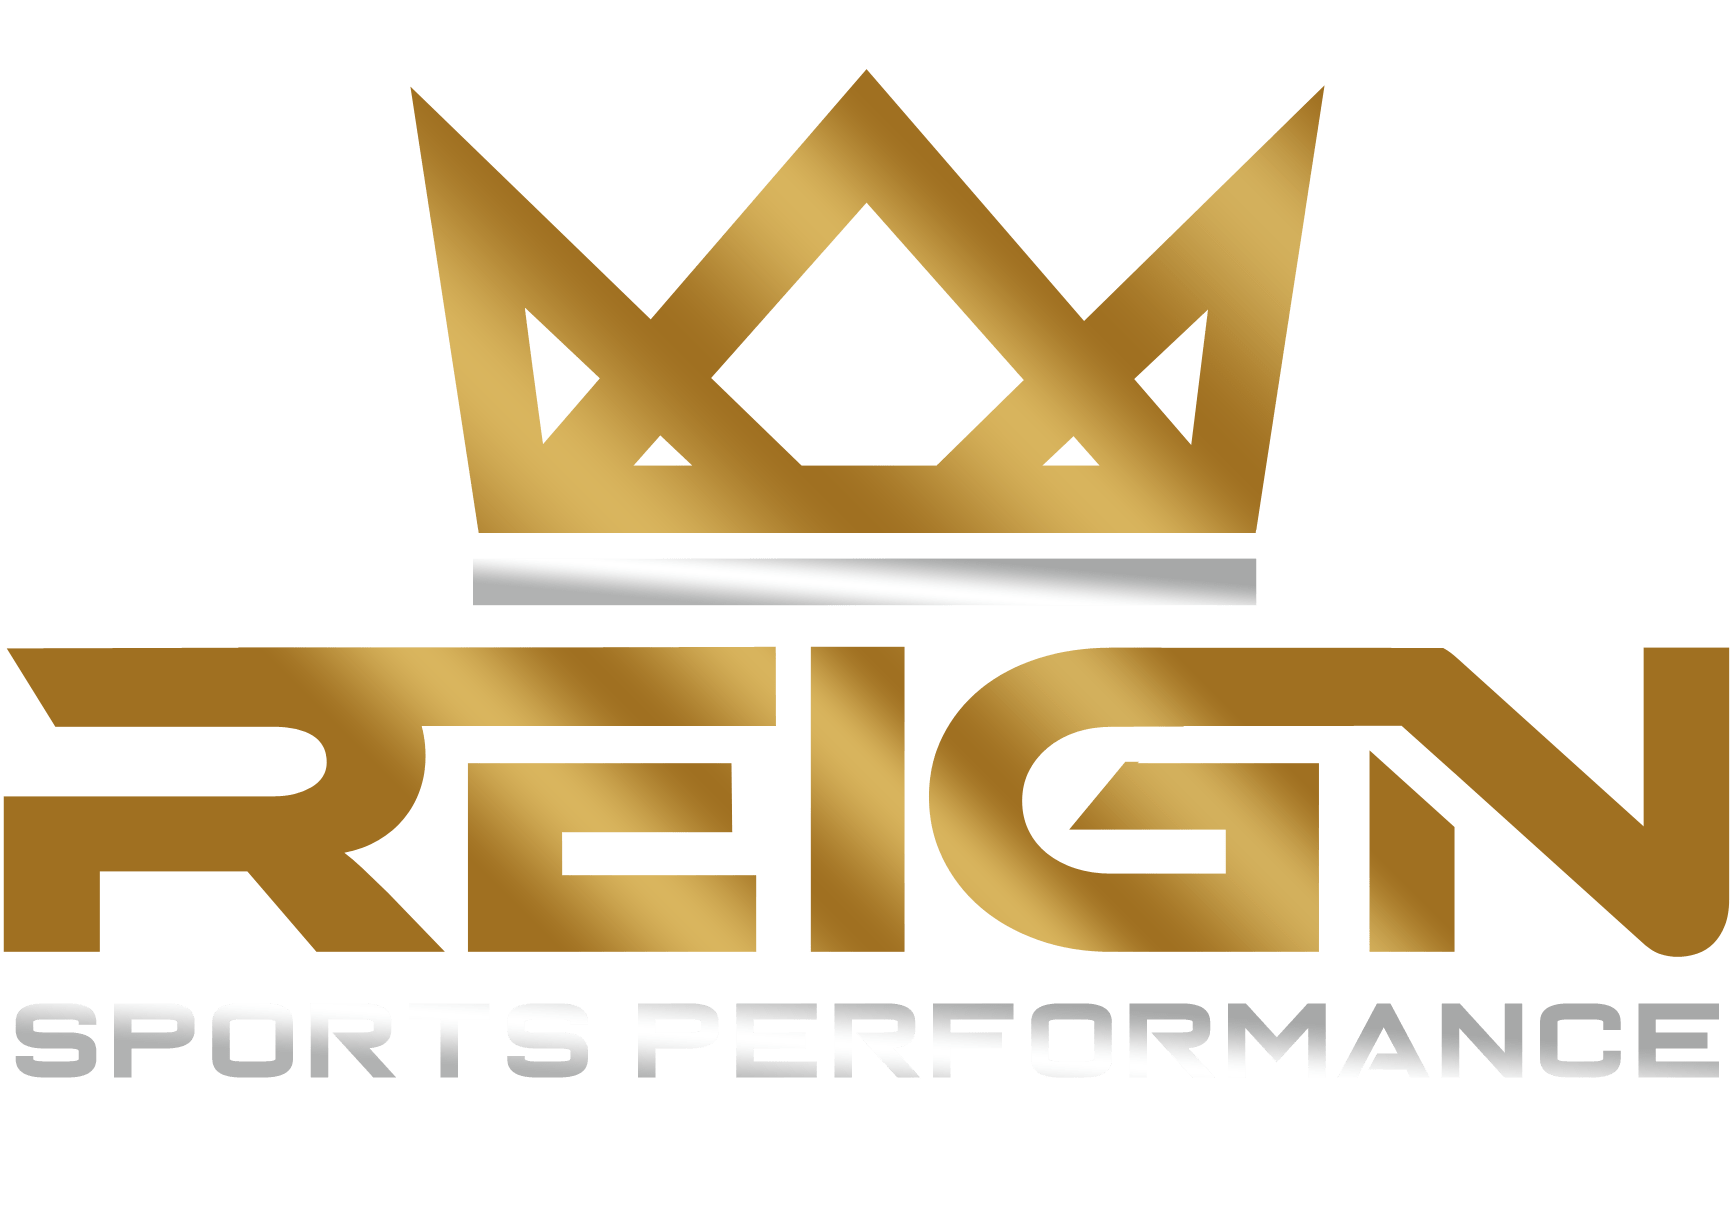 2nd Logo - 2nd logoReign Sports Performance